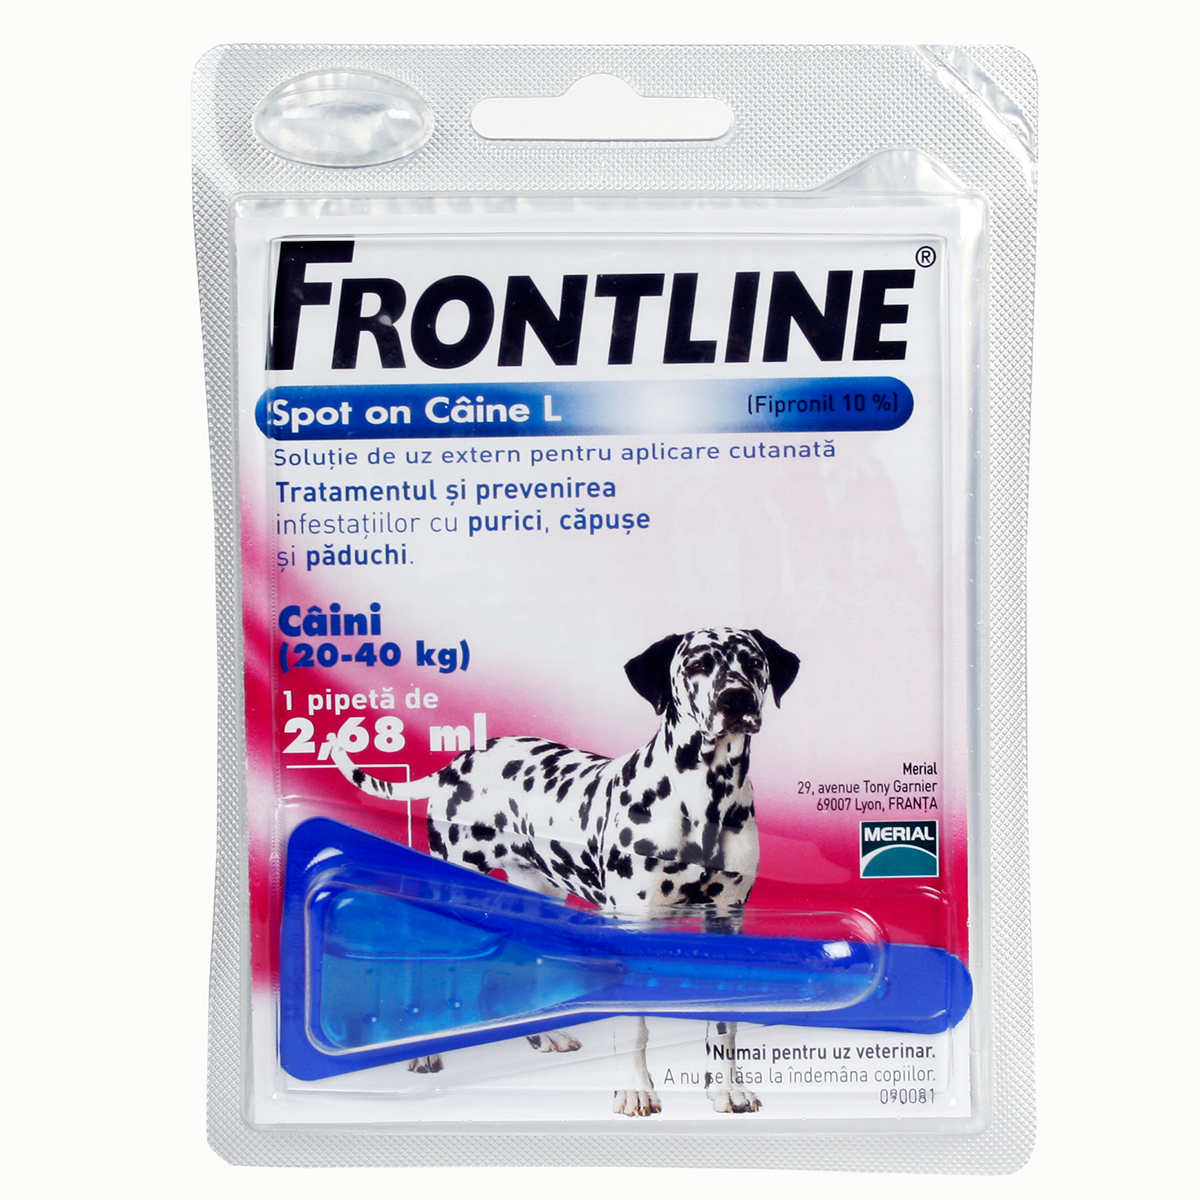 Frontline Spot On L (20-40 kg) – 1 Pipeta Antiparazitara Merial